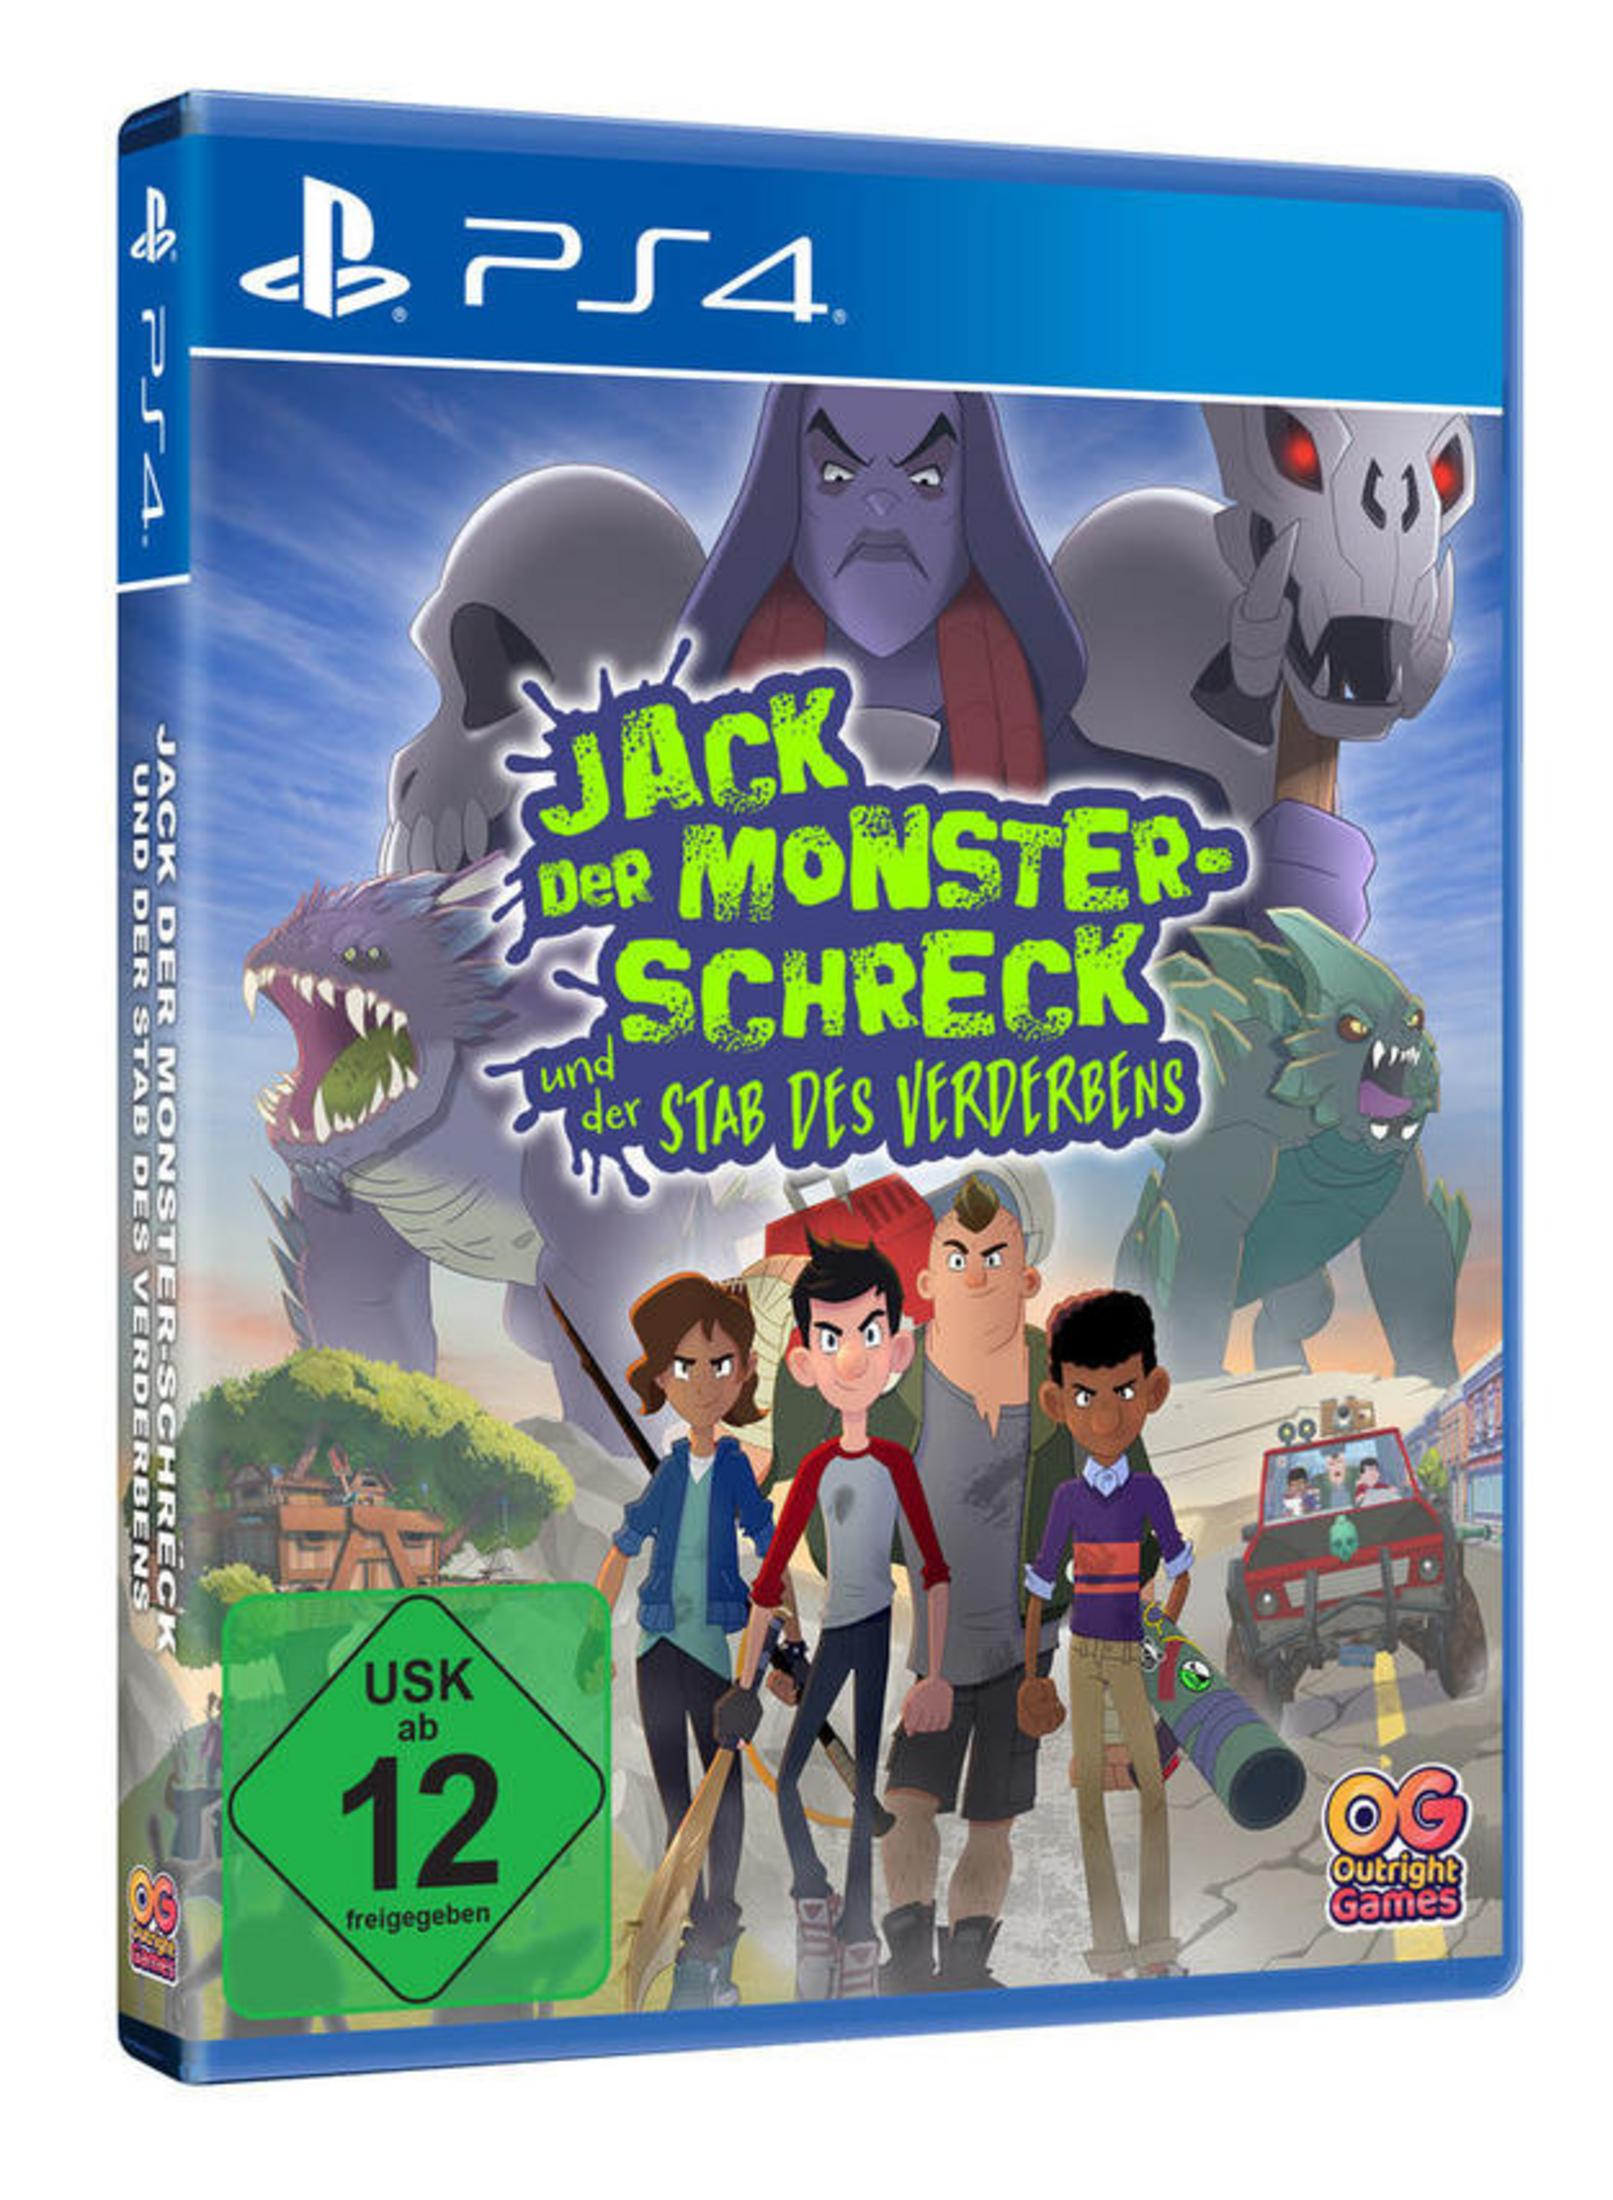 (The Earth) Jack [PlayStation Last Kids on Monsterschreck der 4] -